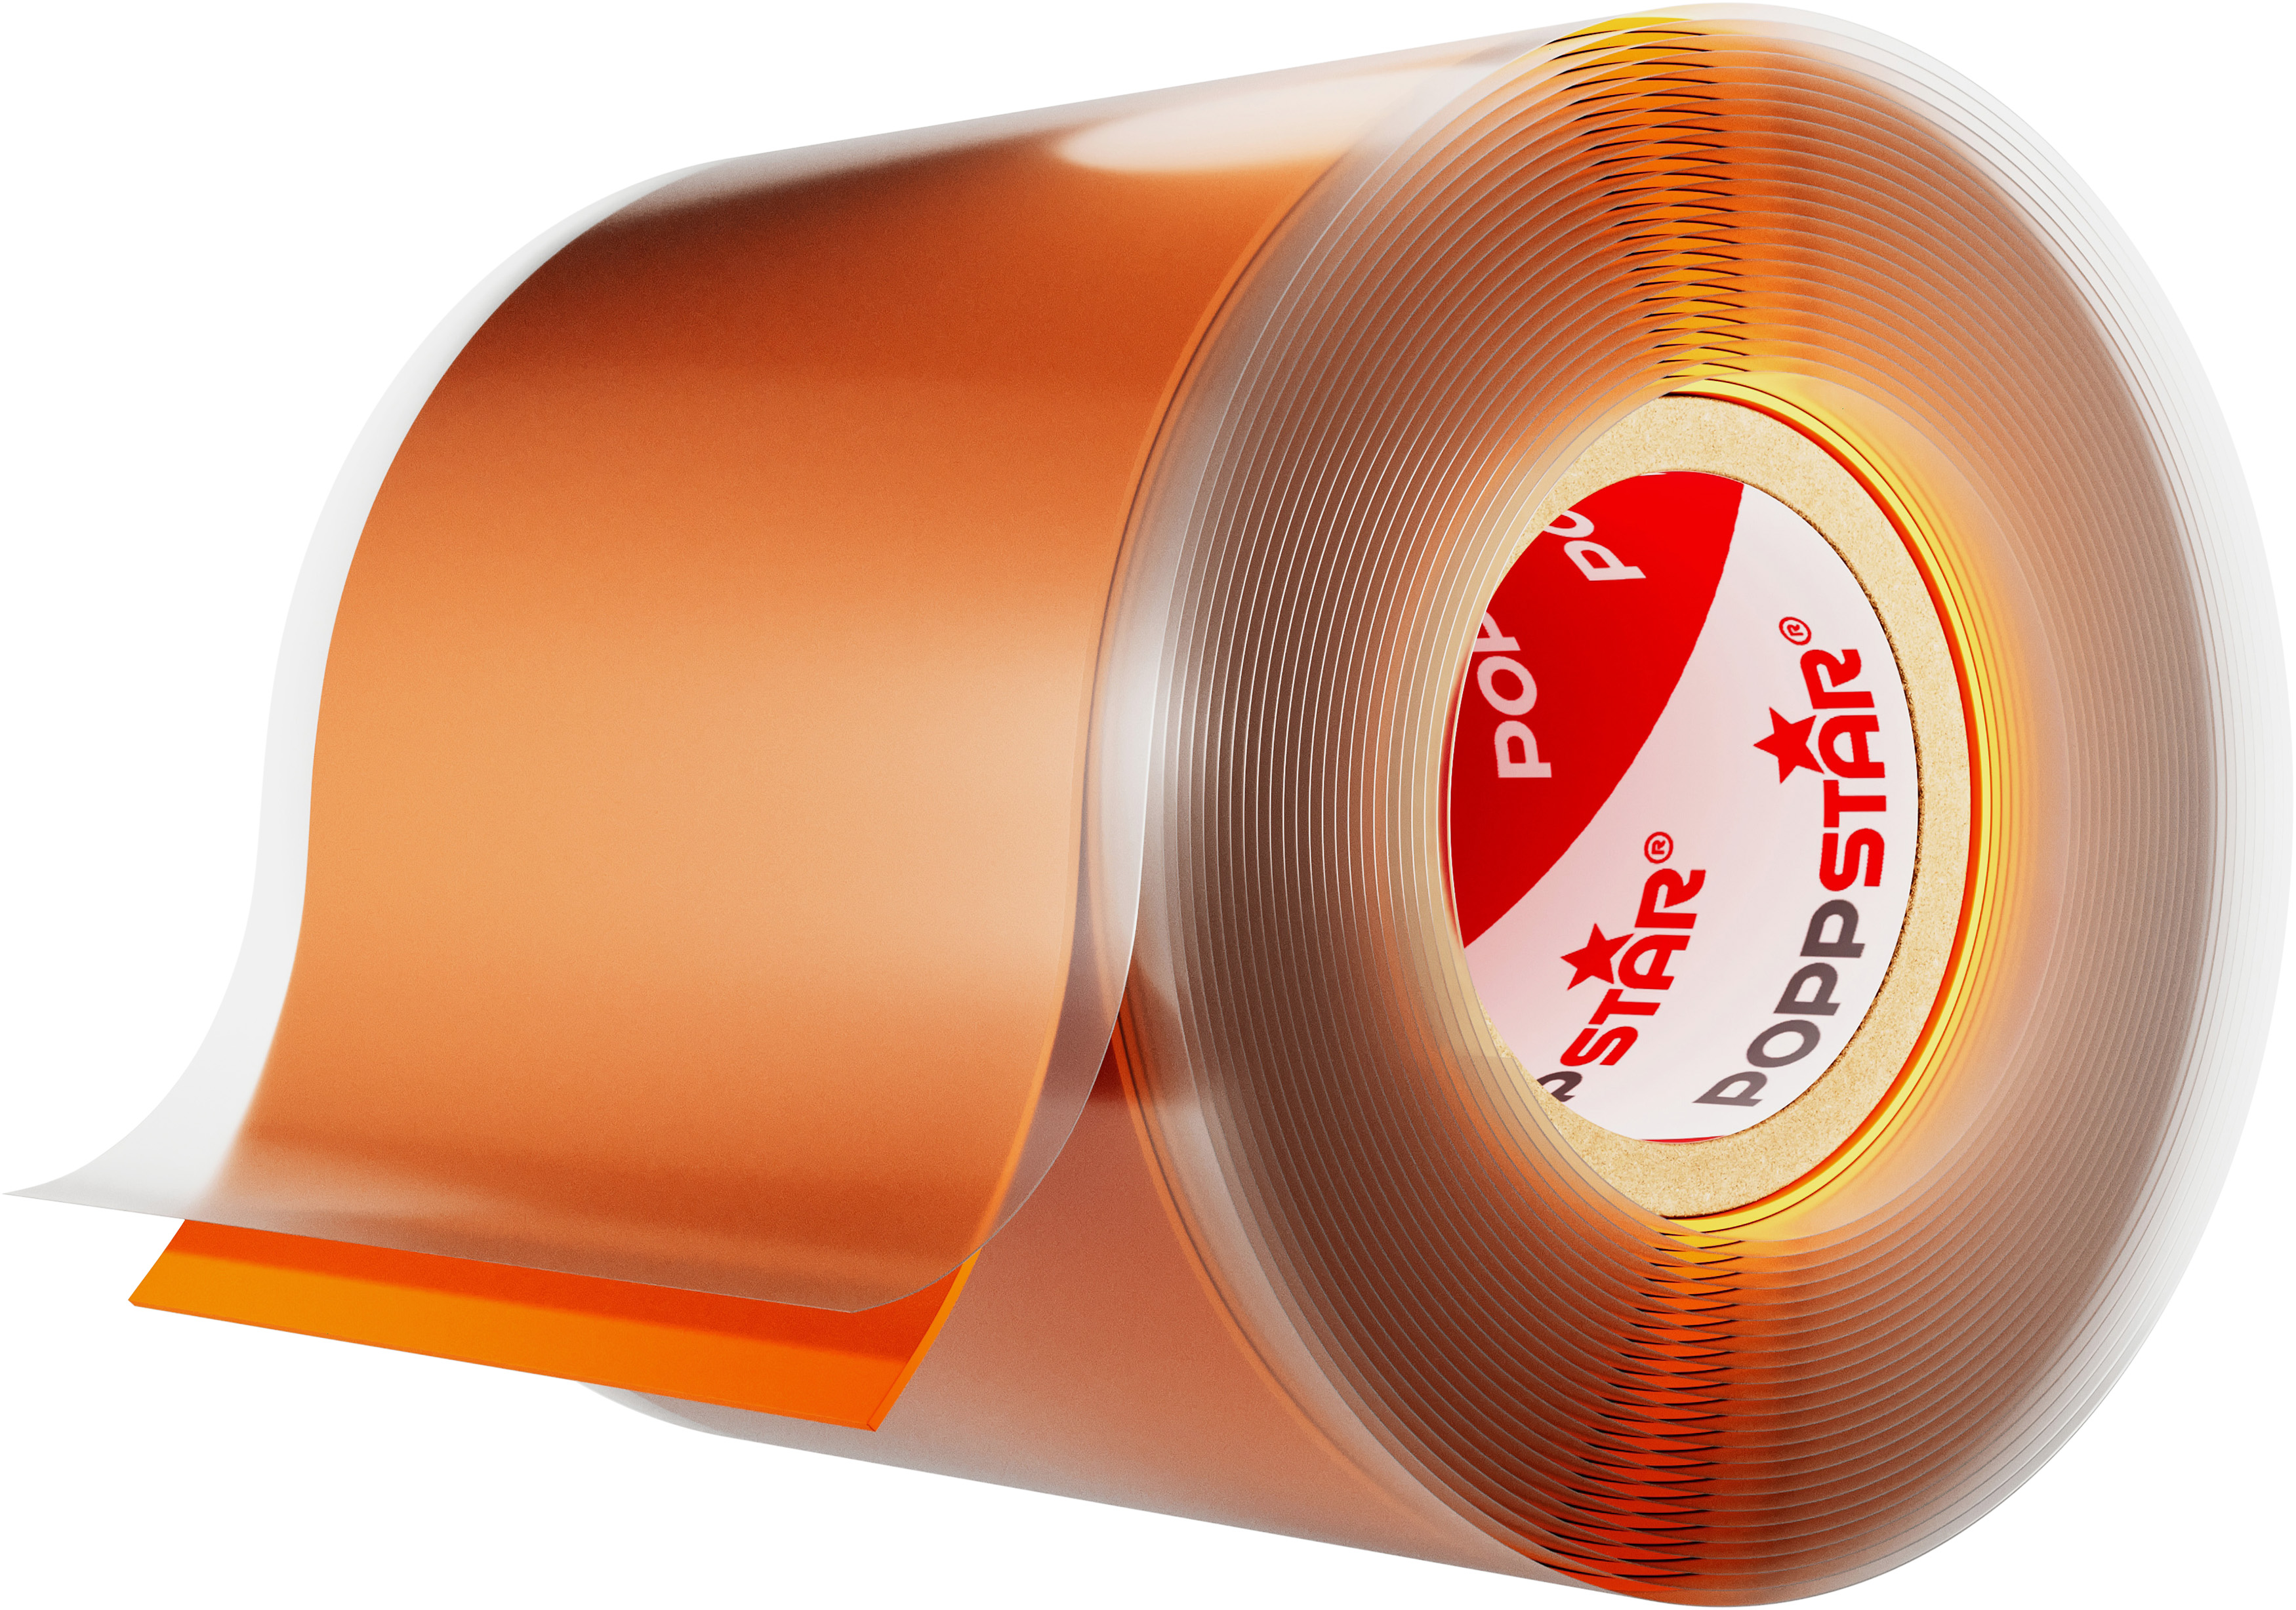 Poppstar selbstverschweißendes Silikonband orange 3m x 50mm